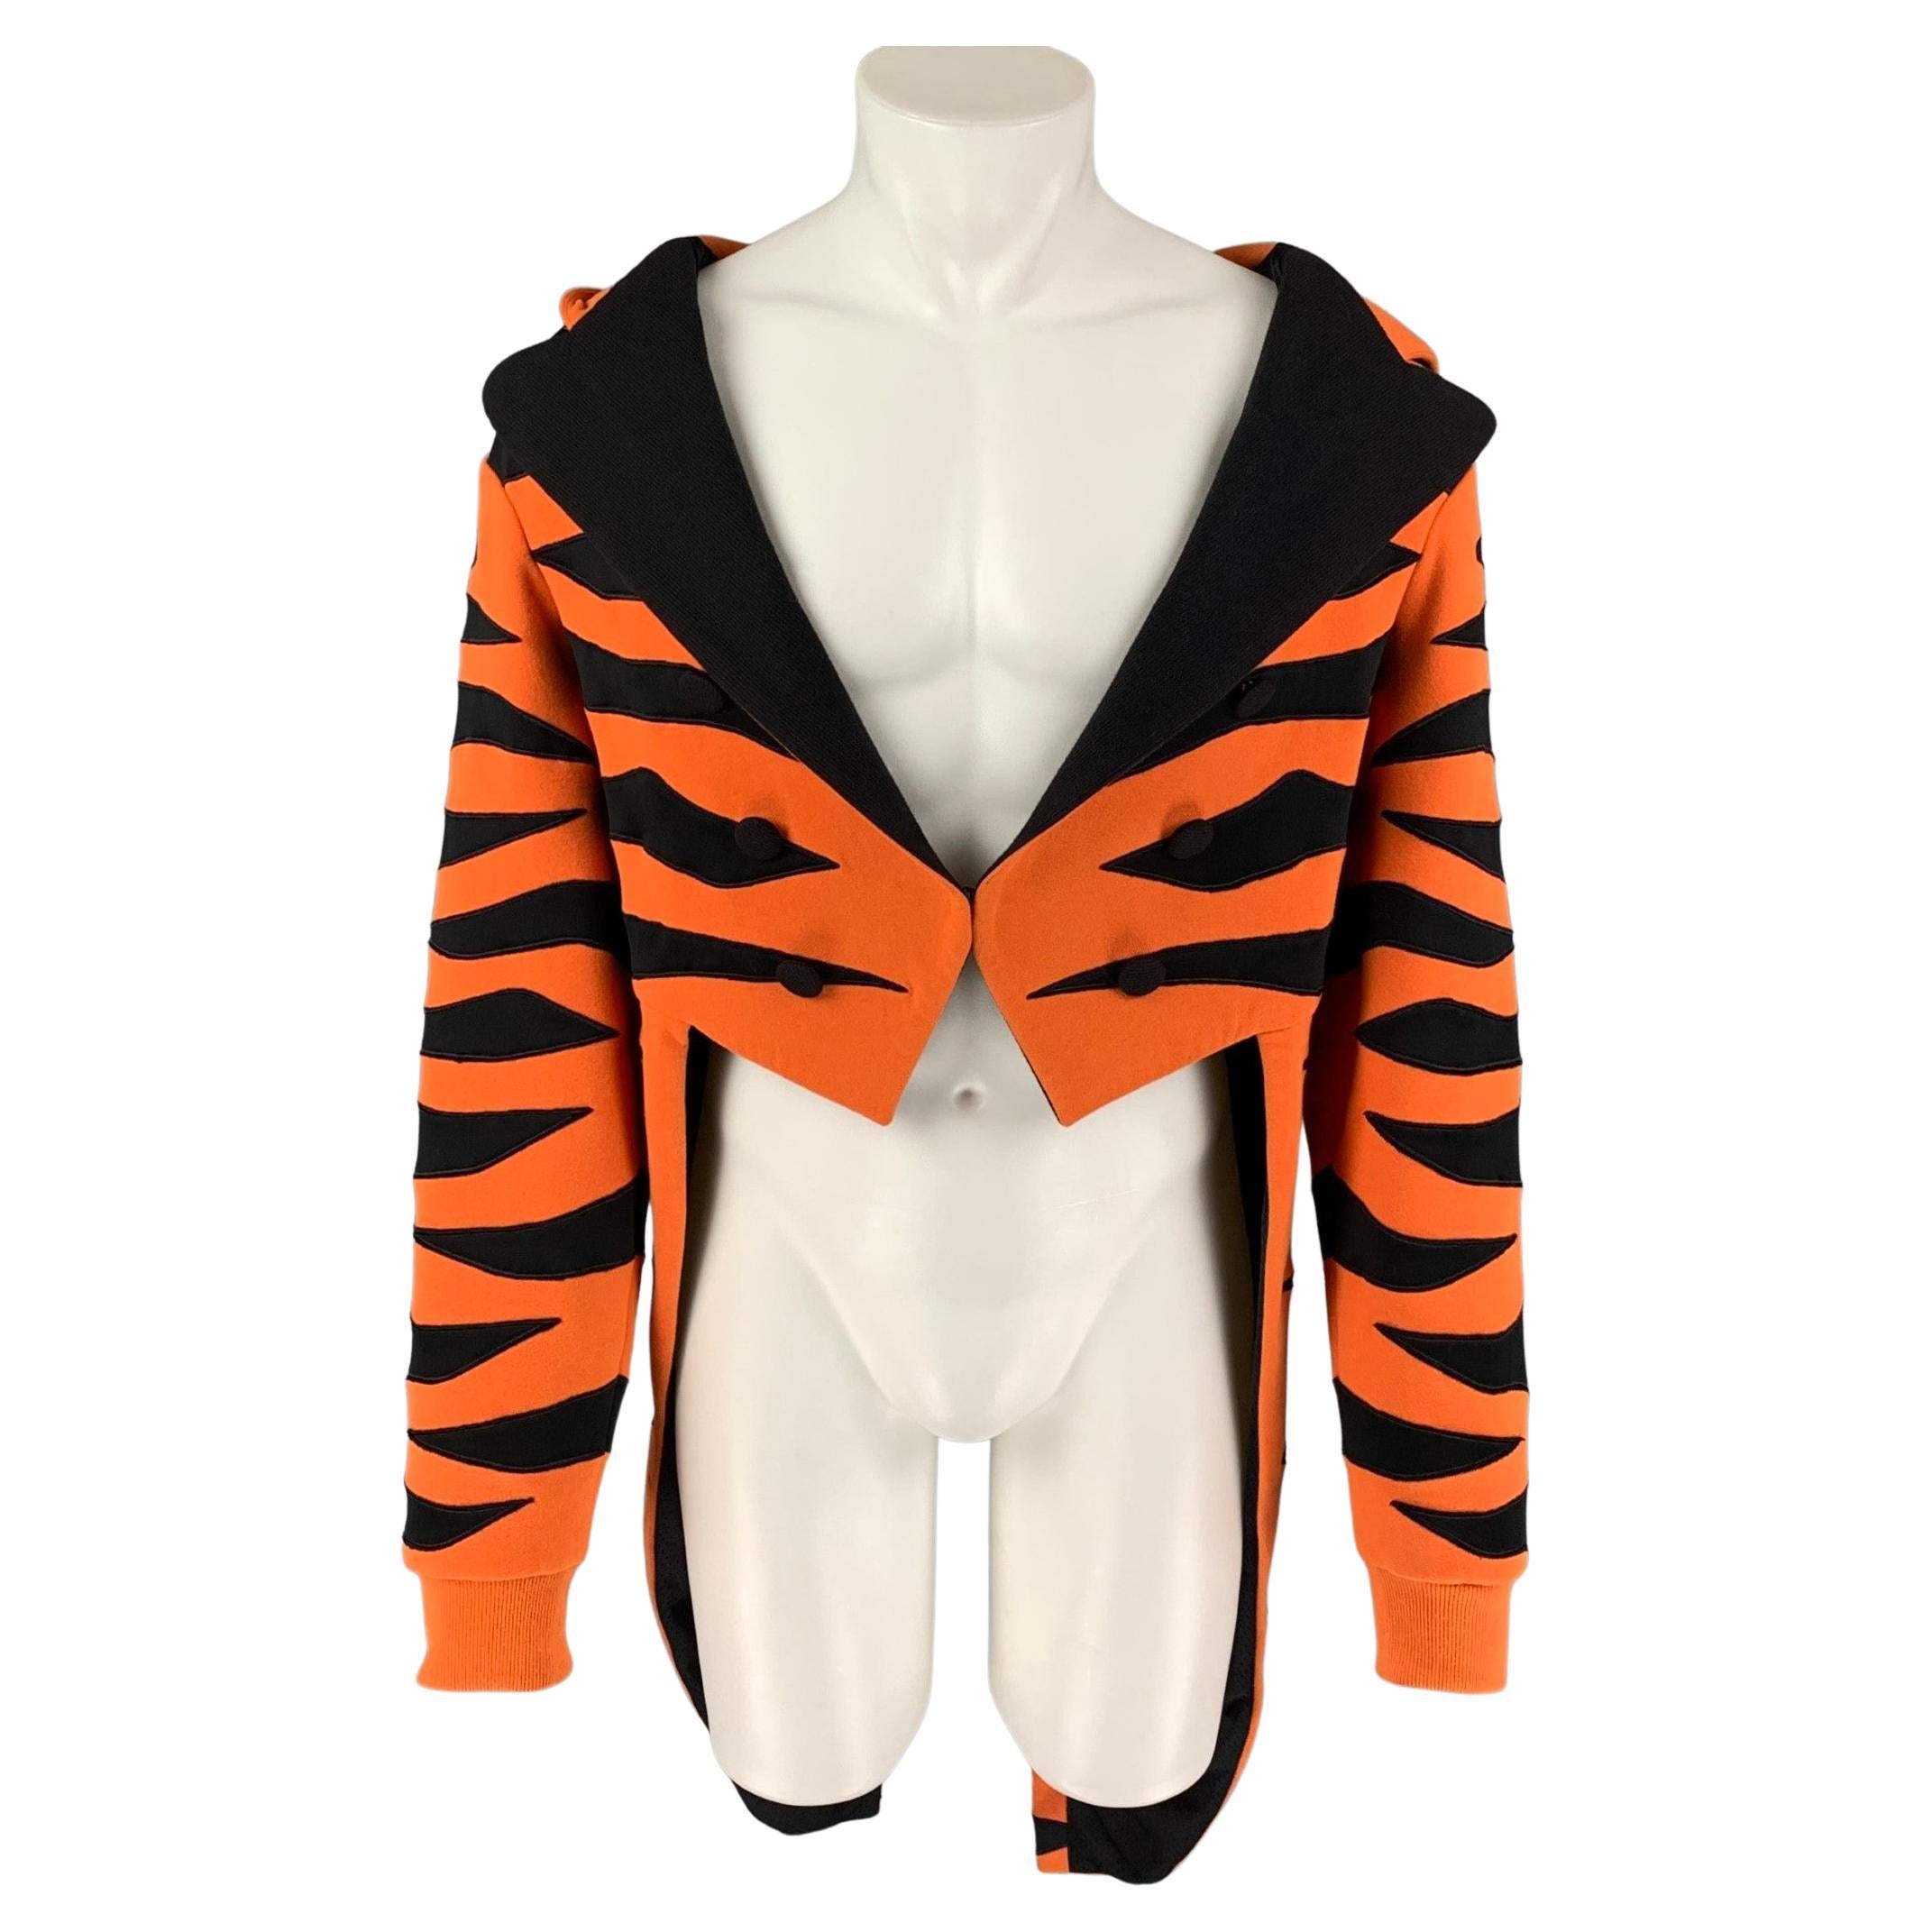 JEREMY SCOTT x ADIDAS Size Orange Black Cotton Jacket at 1stDibs | jeremy scott bear jacket, orange tailcoat, orange and black jacket